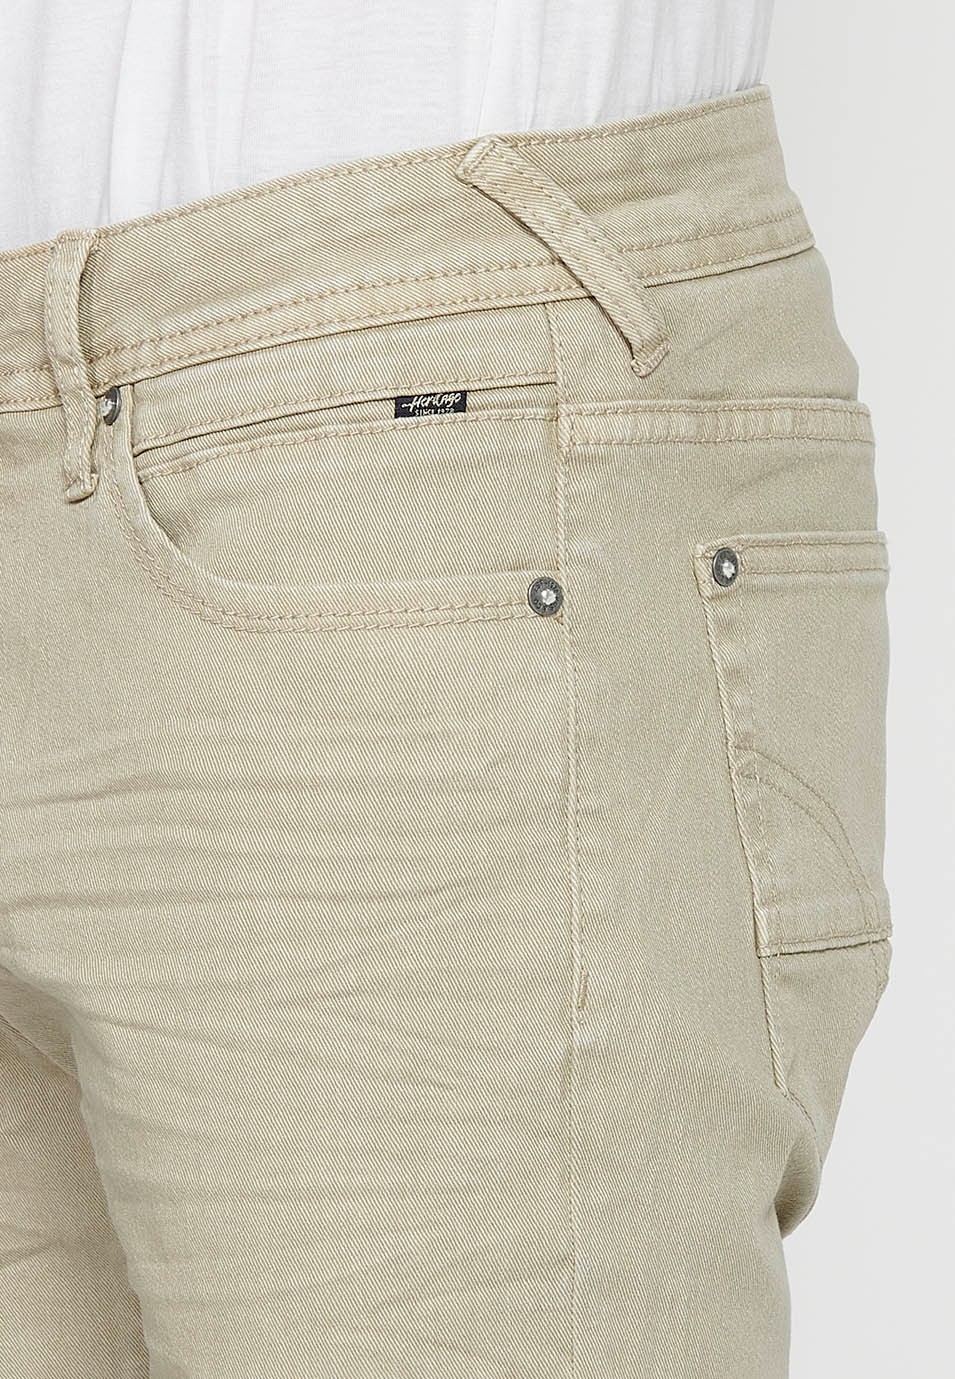 Pantalon long droit coupe classique avec fermeture sur le devant avec fermeture éclair et bouton avec cinq poches, une poche en couleur pierre pour homme 8